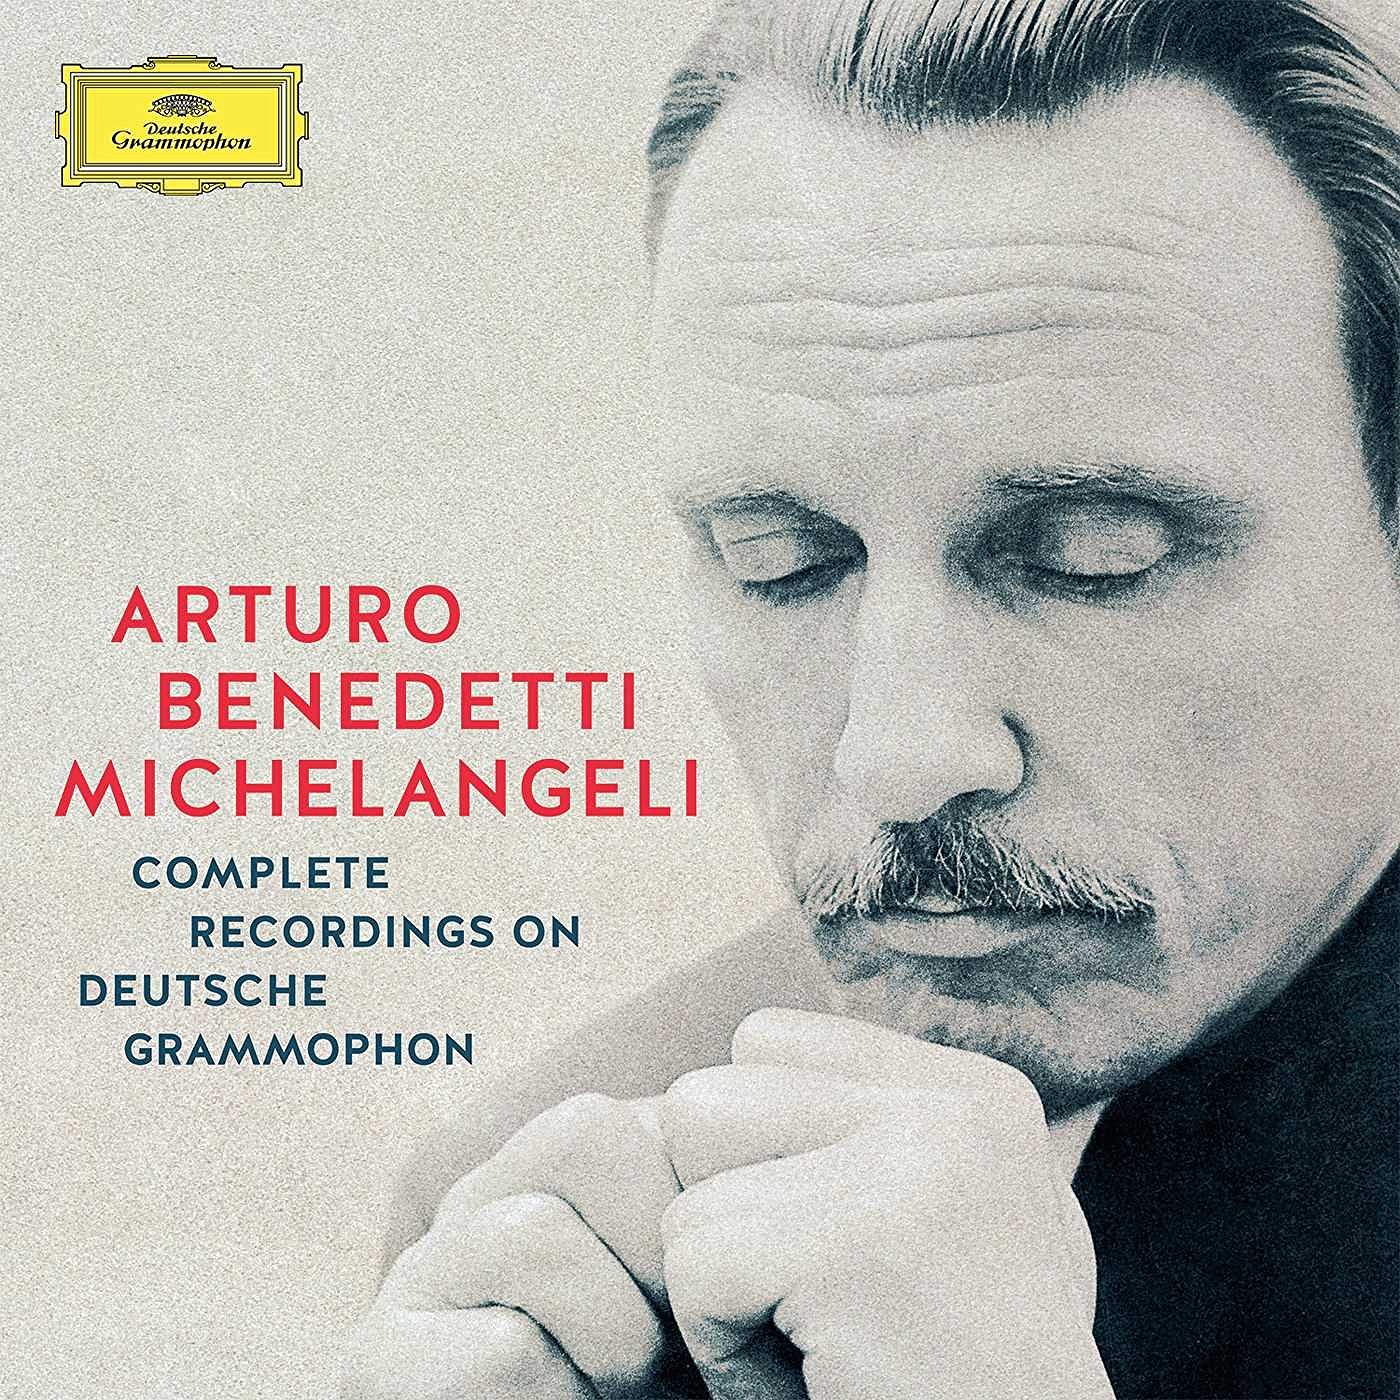 Complete Recordings On Deutsche Grammophon - Arturo Benedetti Michelangeli | Arturo Benedetti Michelangeli